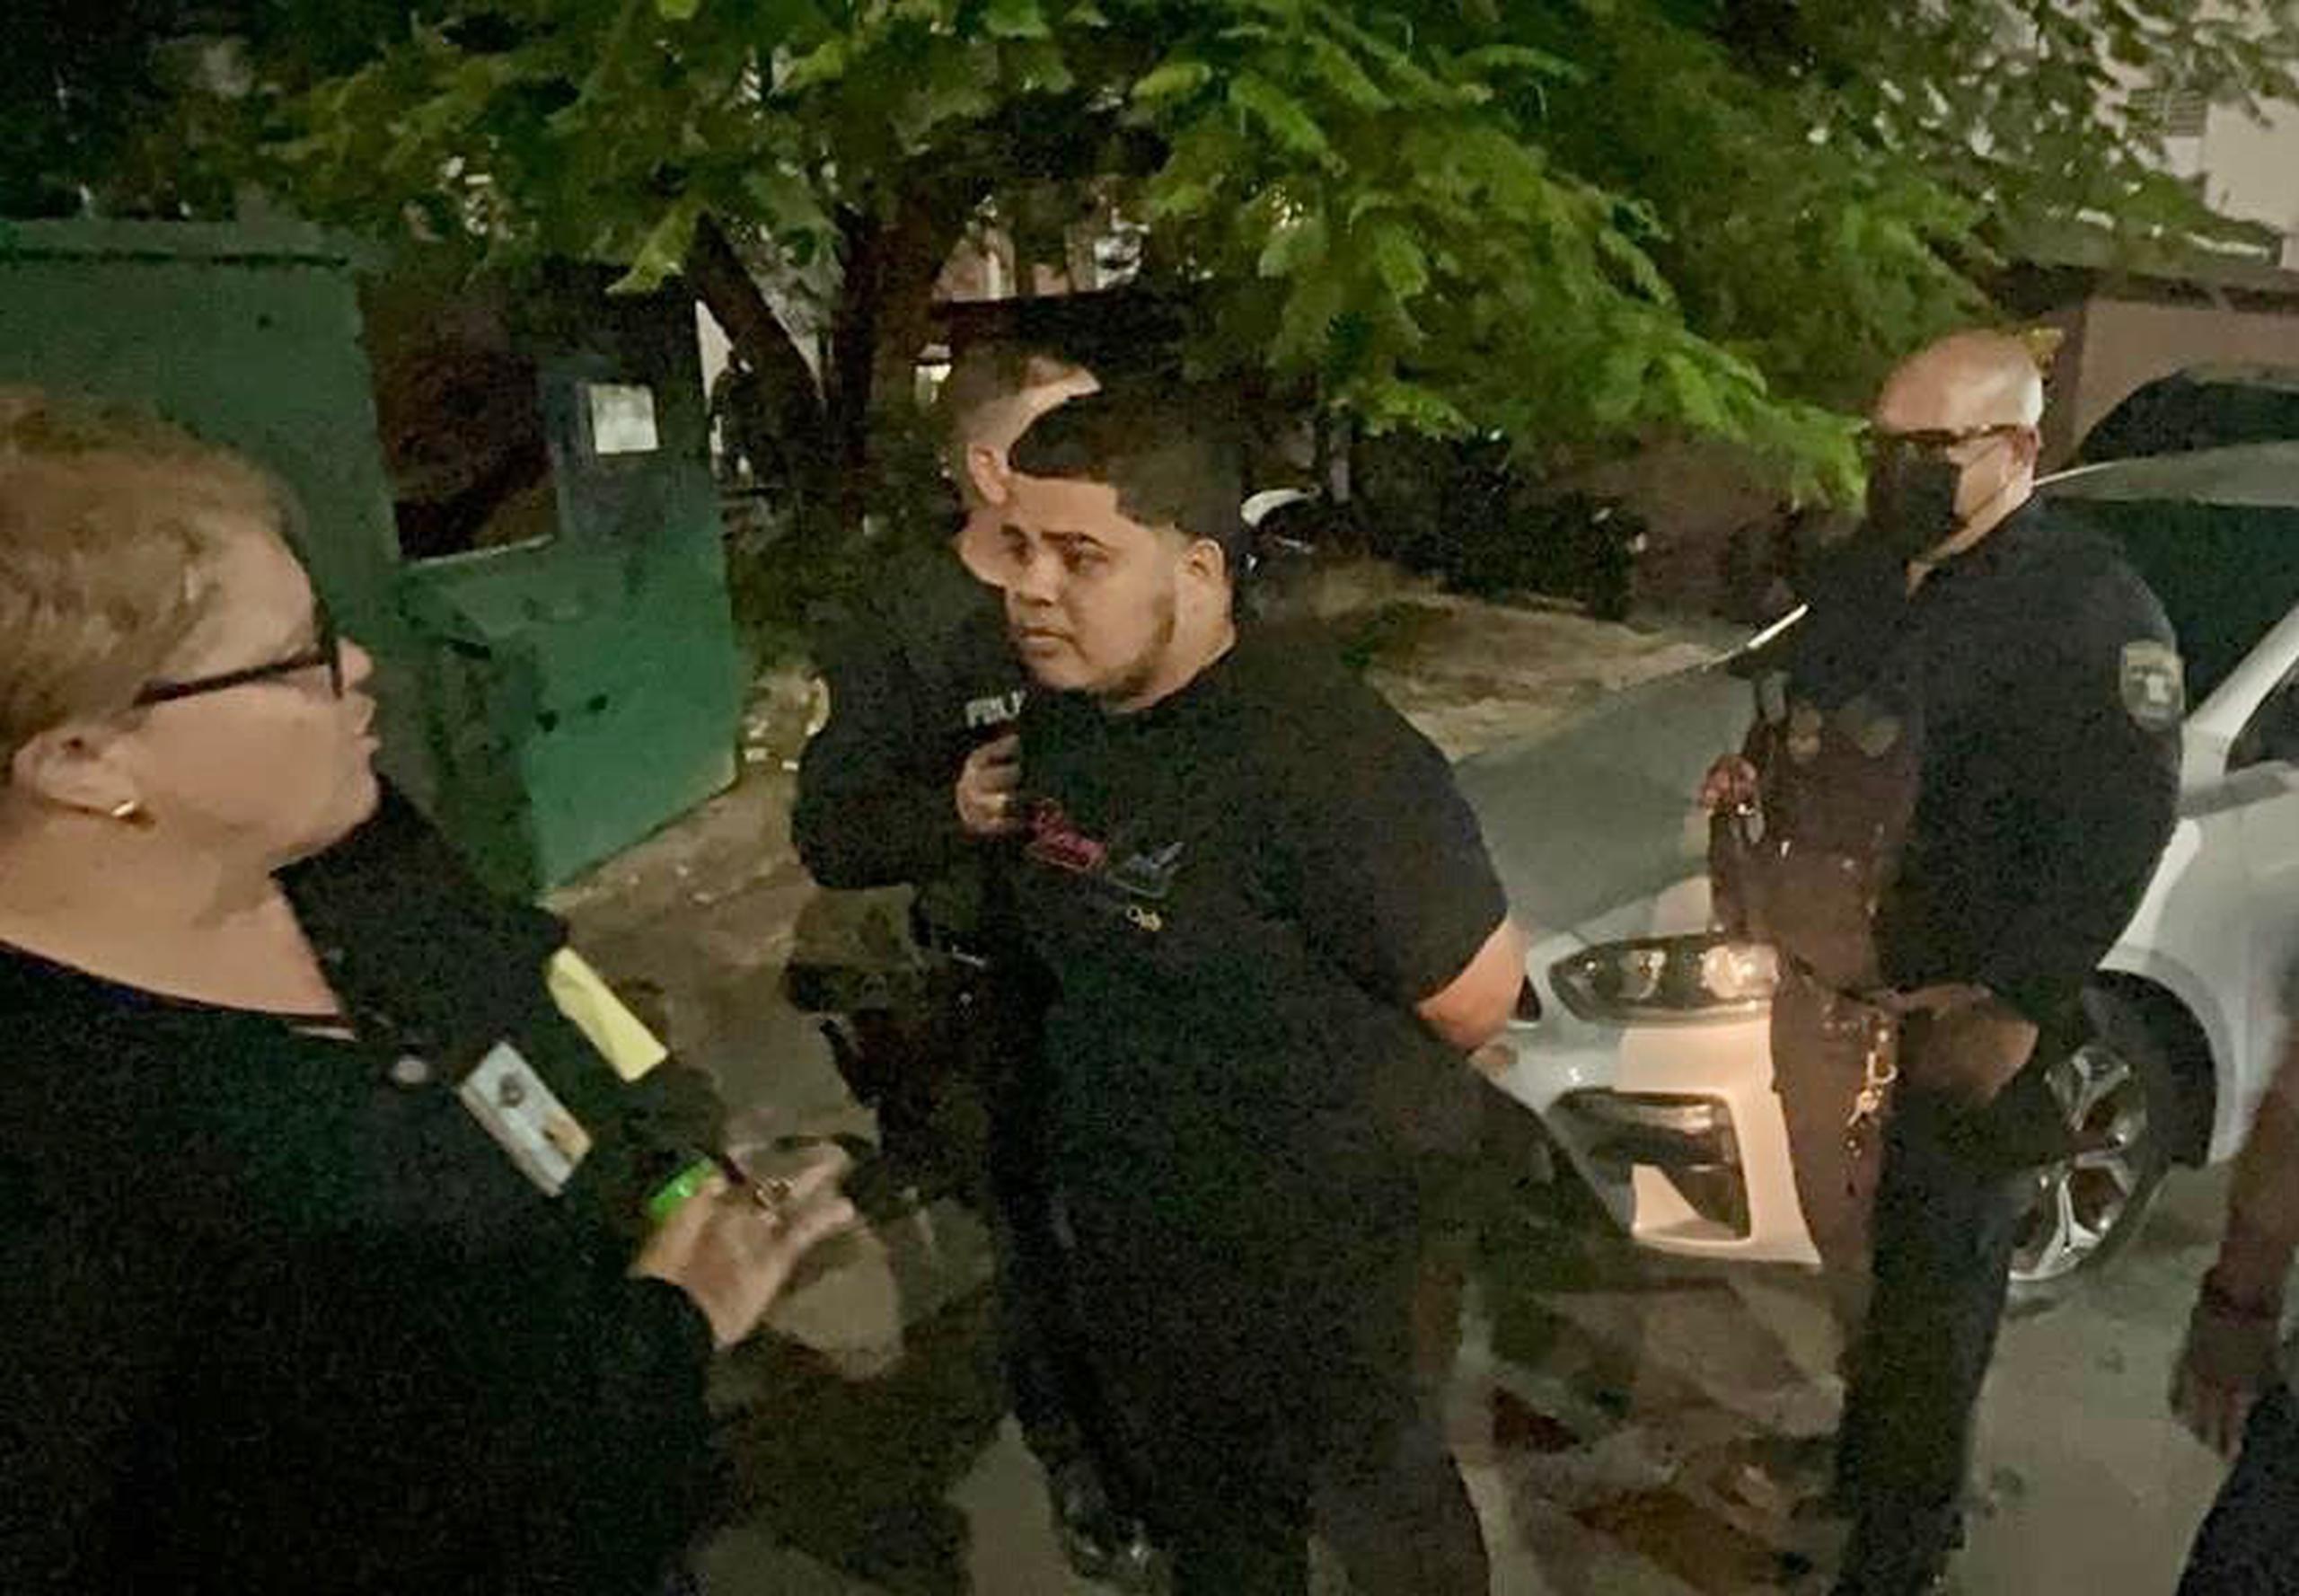 Uno de los arrestados durante un operativo policíaco en el residencial Luis Llorens Torres.